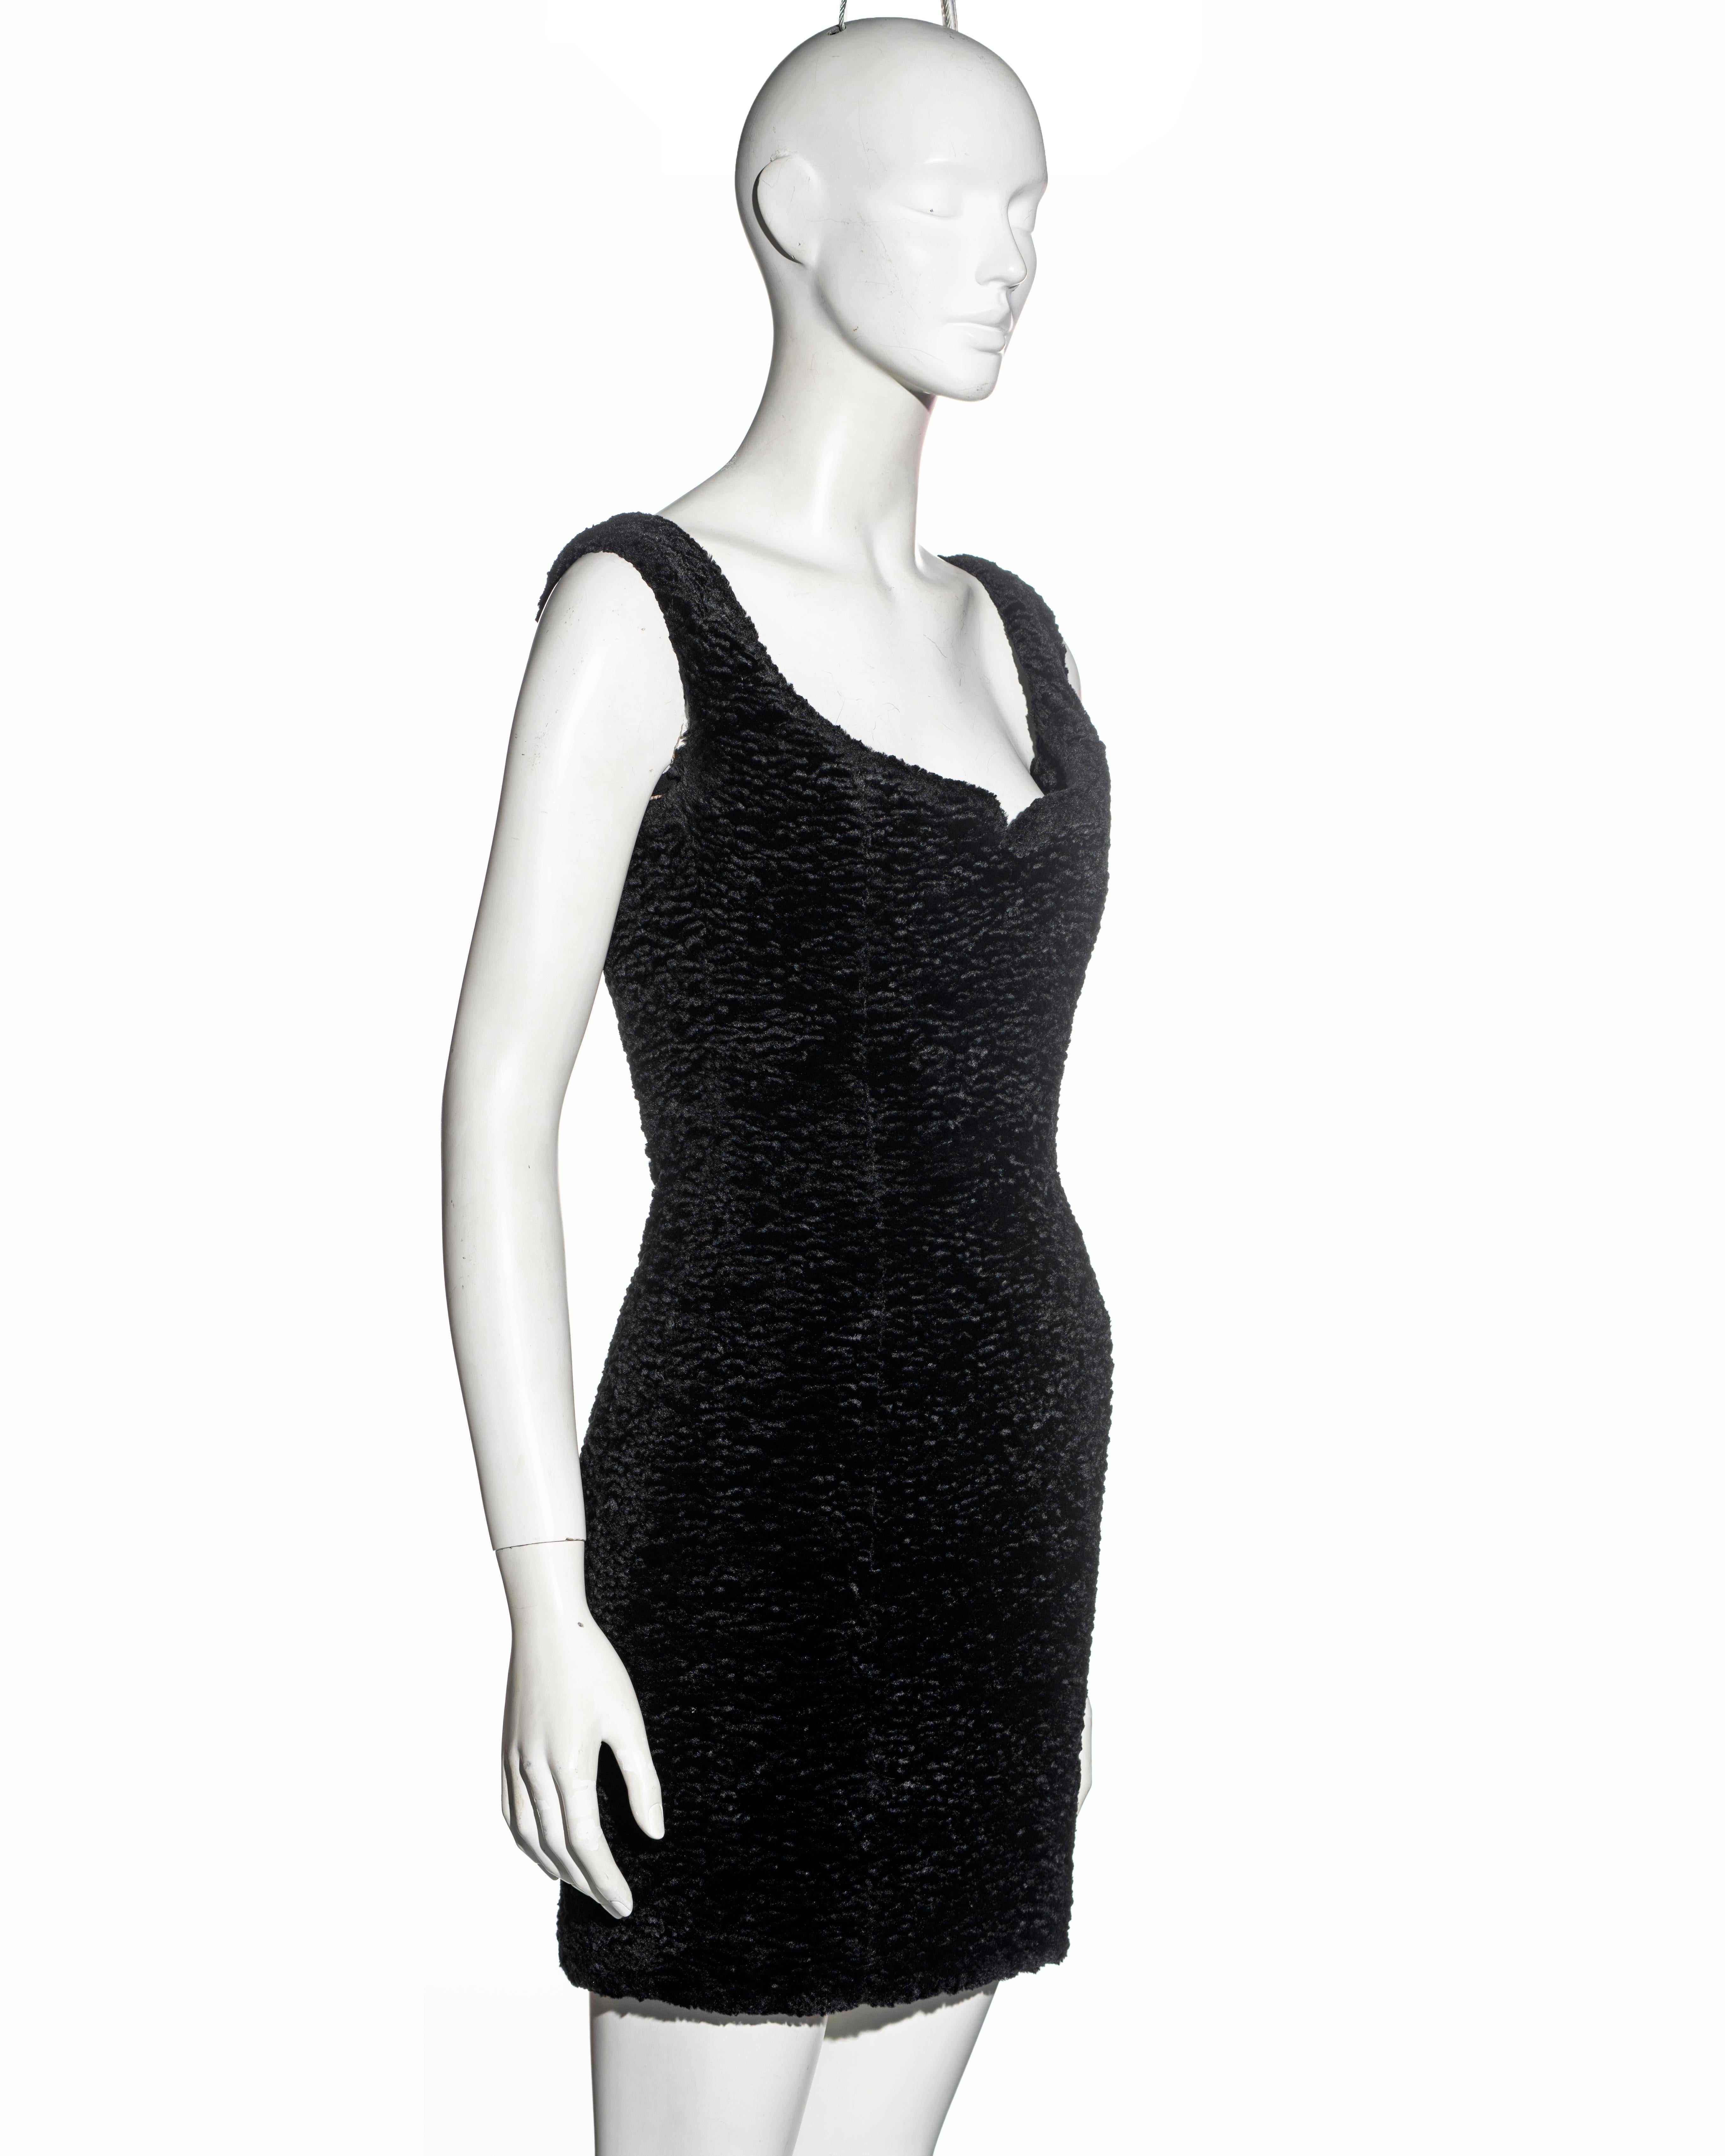 Vivienne Westwood black faux fur mini dress with built in corset, fw 1994 For Sale 1